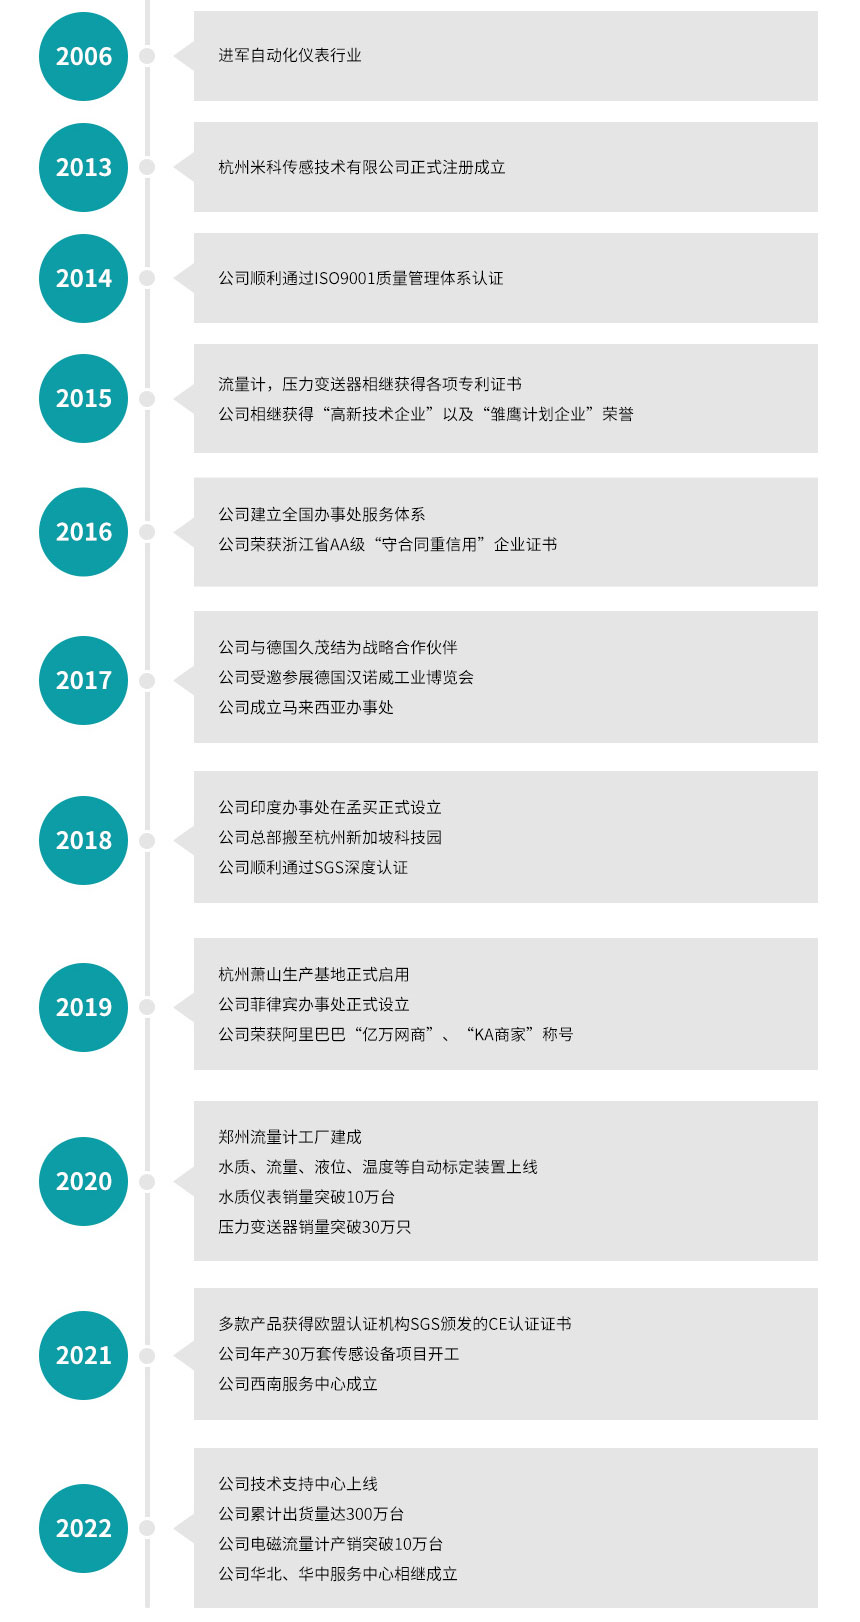 北京安信9传感技术有限公司发展历程